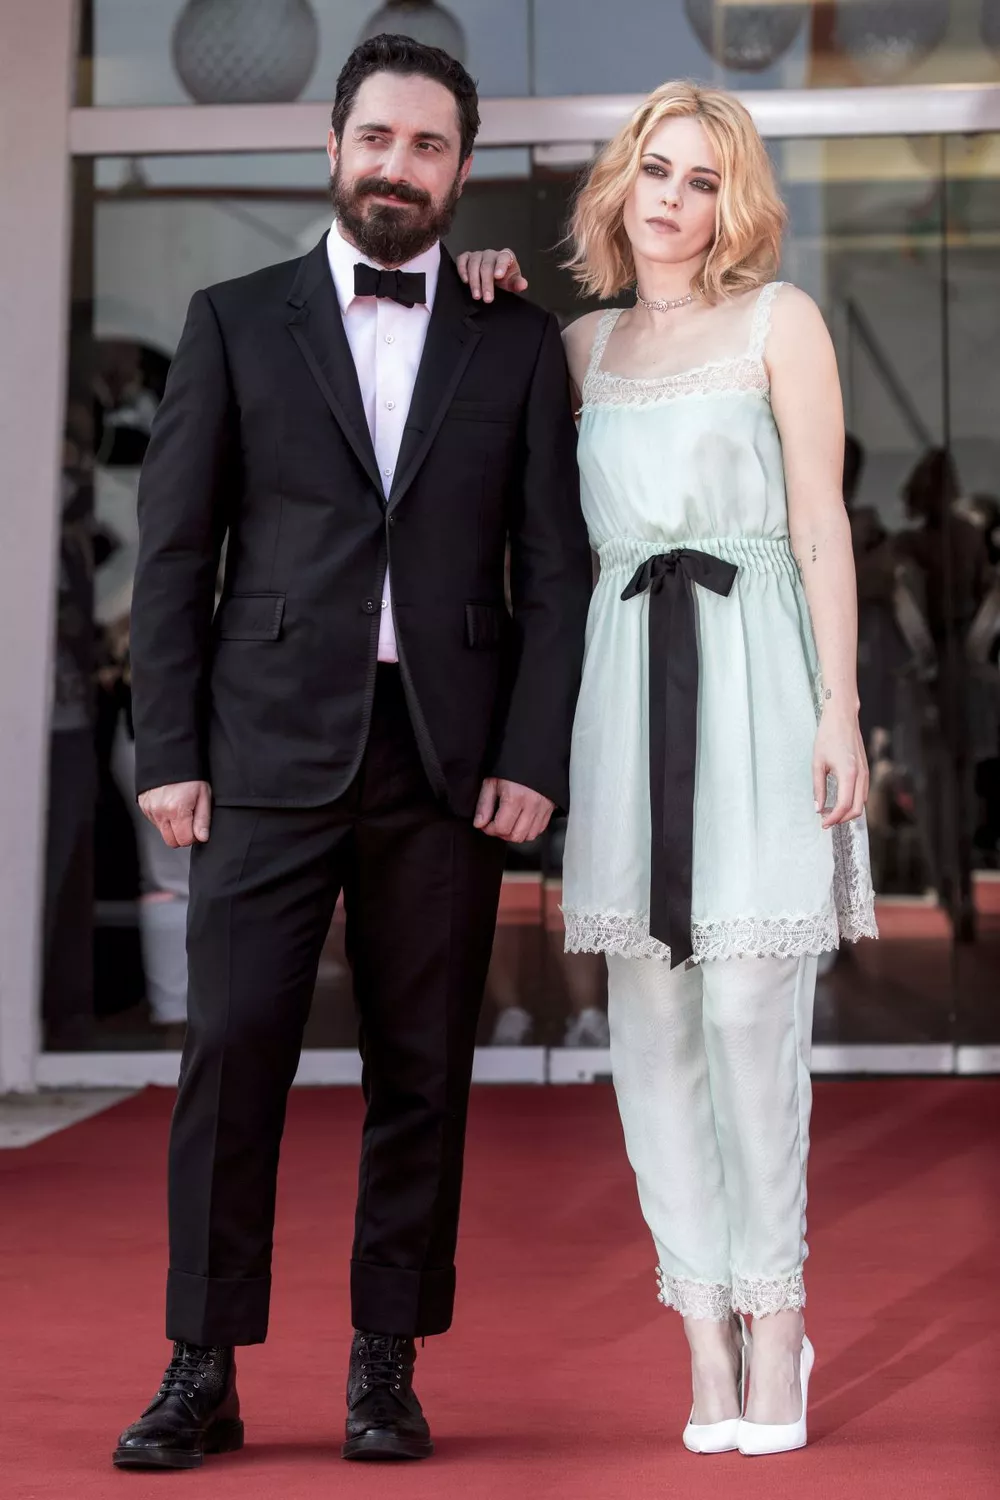 Режиссер Пабло Ларраин и актриса Кристен Стюарт на премьере фильма “Спенсер” в Венеции, 3 сентября 2021 года